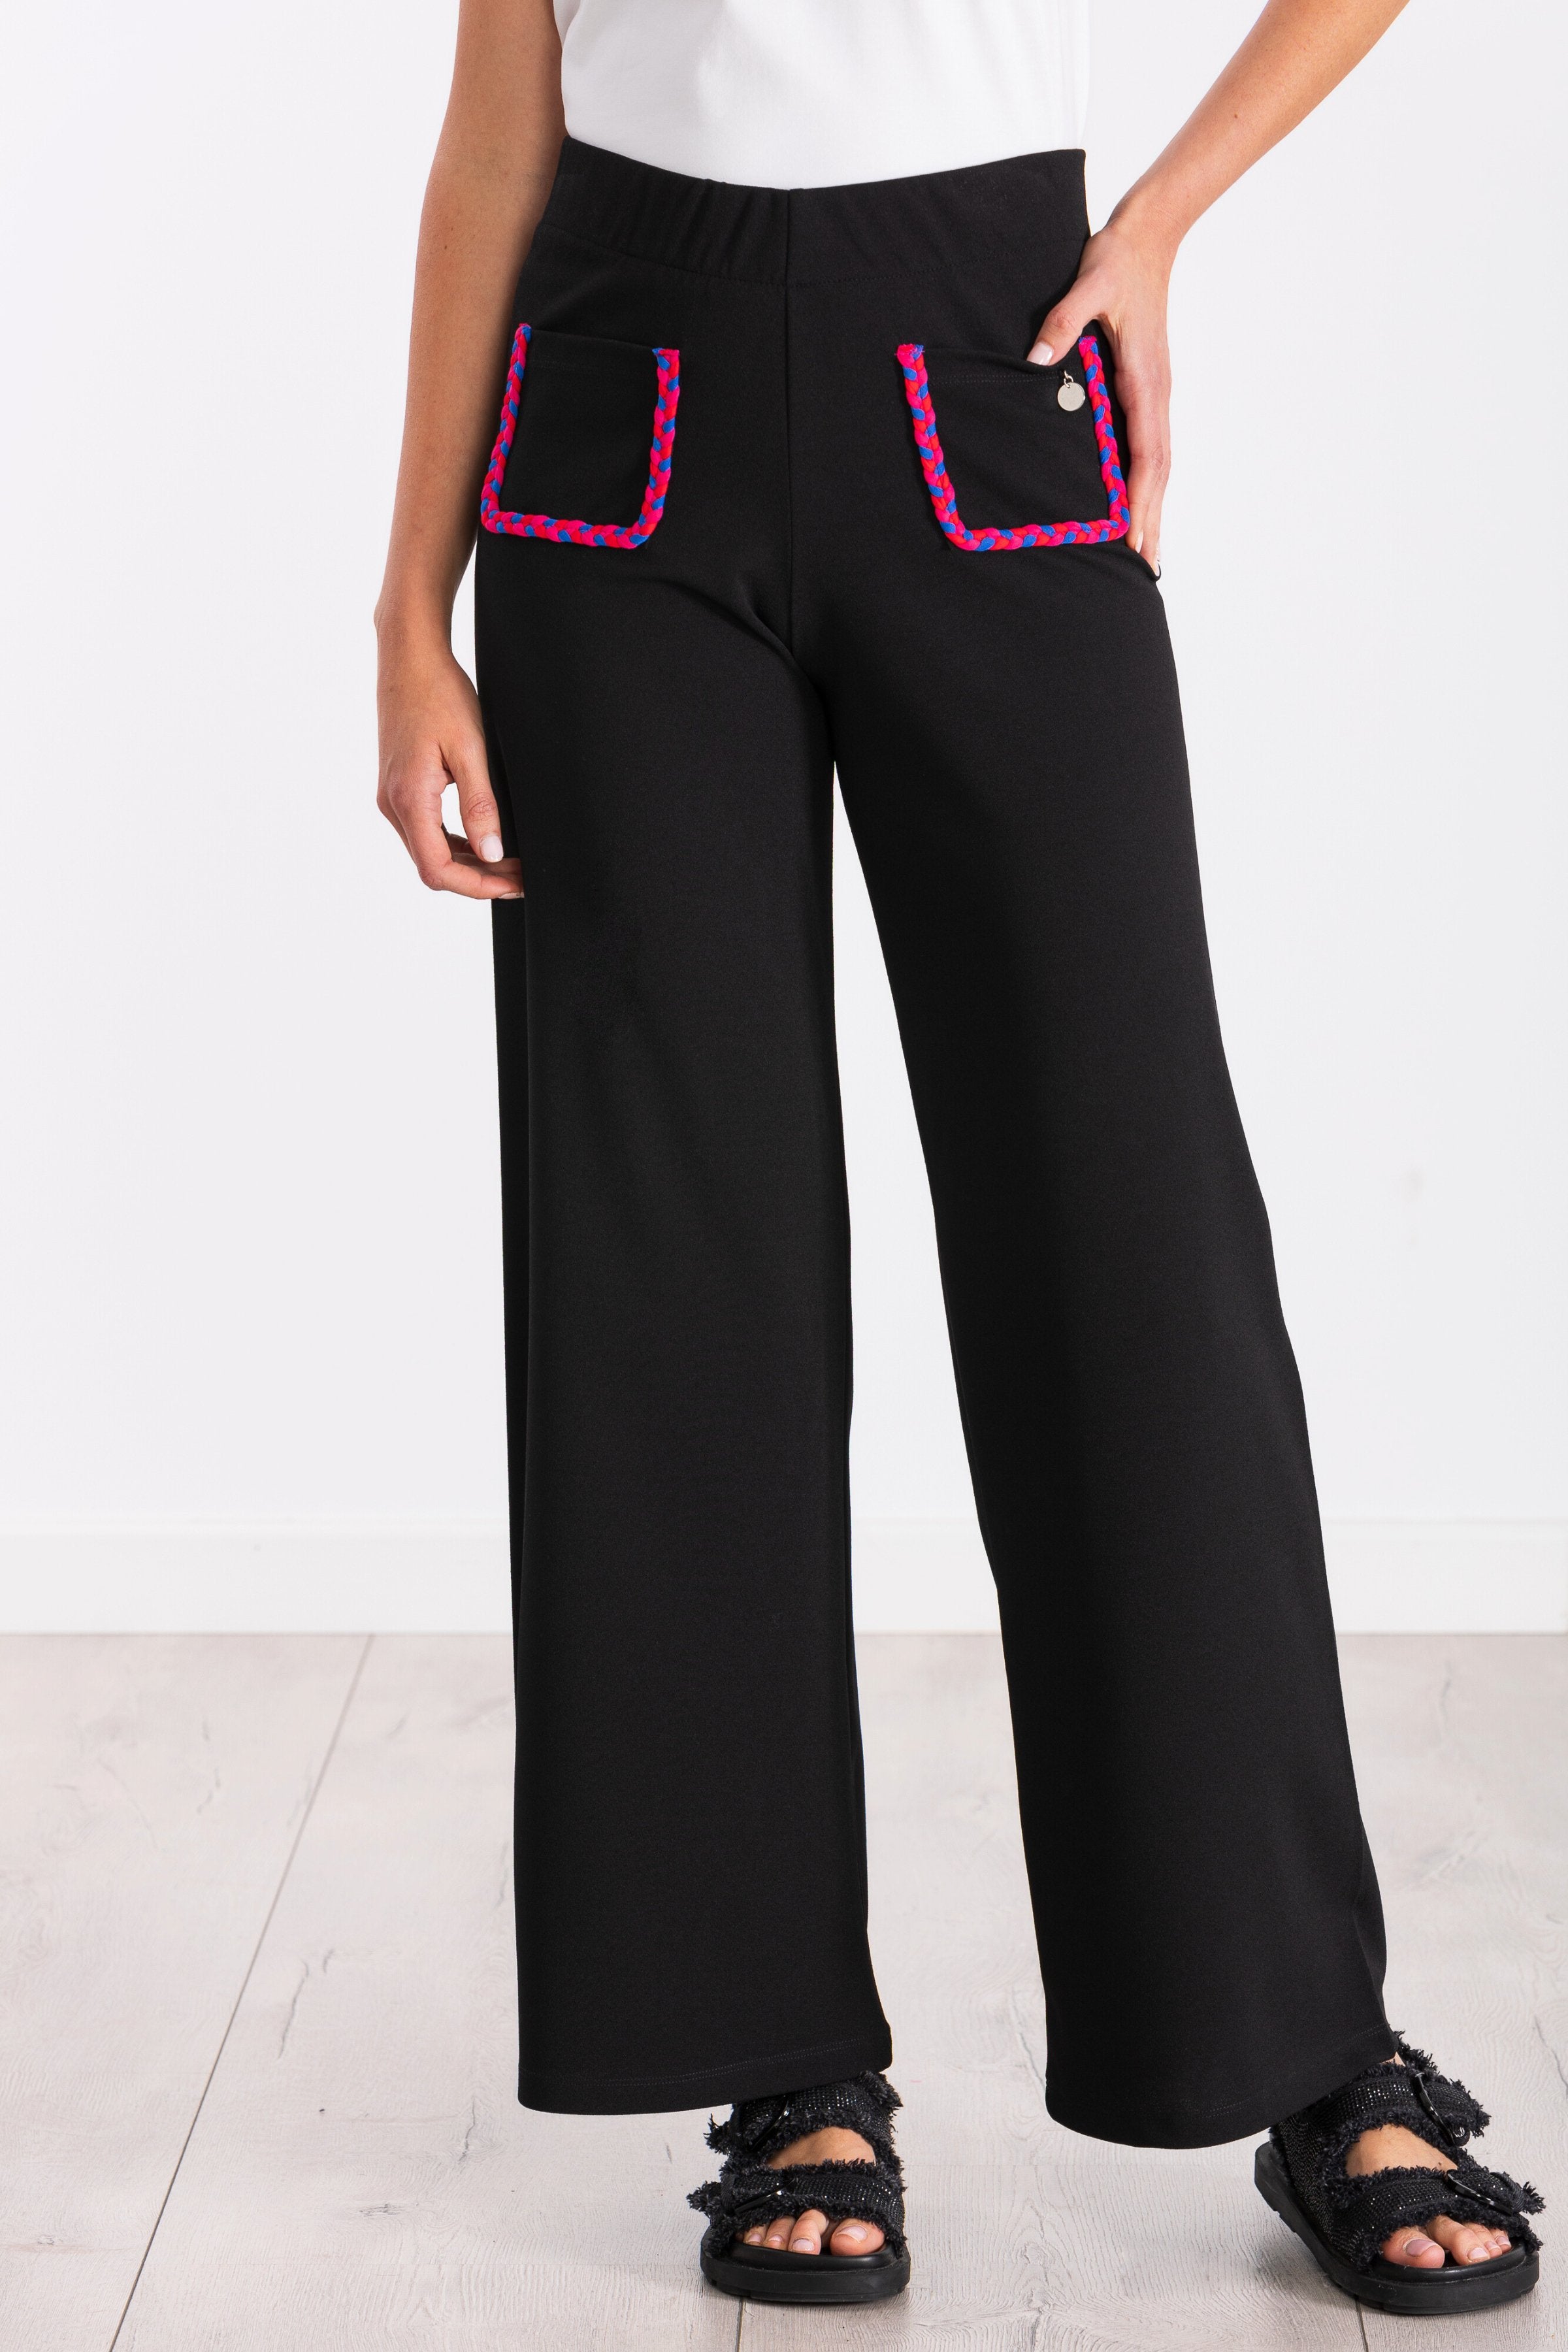 Pantalon negro ancho con bolsillos trenzados fucsia LolitasyL - lolitasyl.com